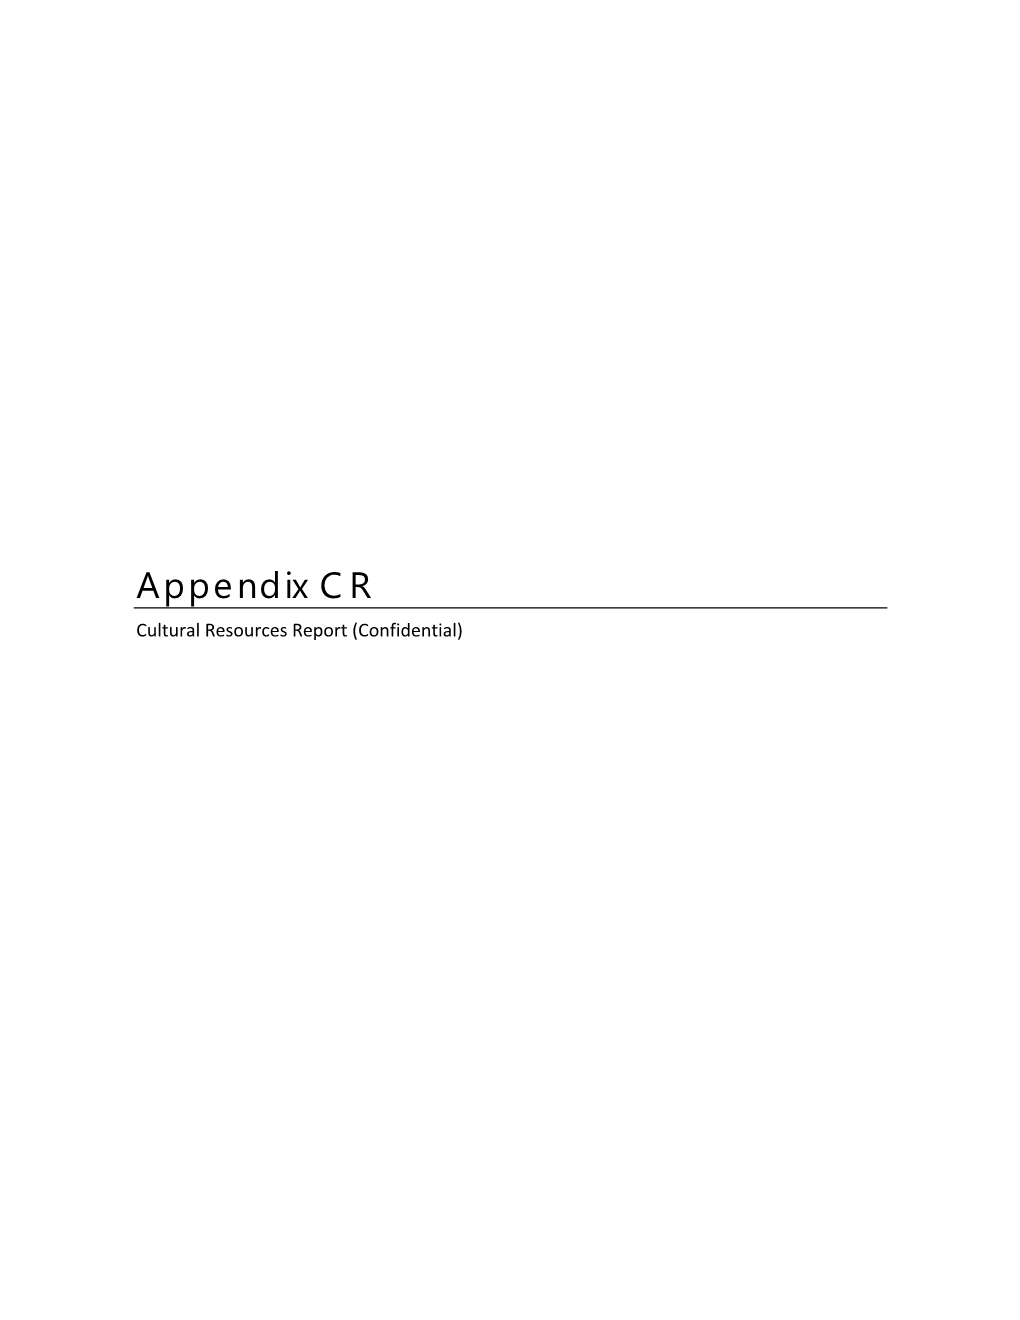 Appendix CR Cultural Resources Report (Confidential)